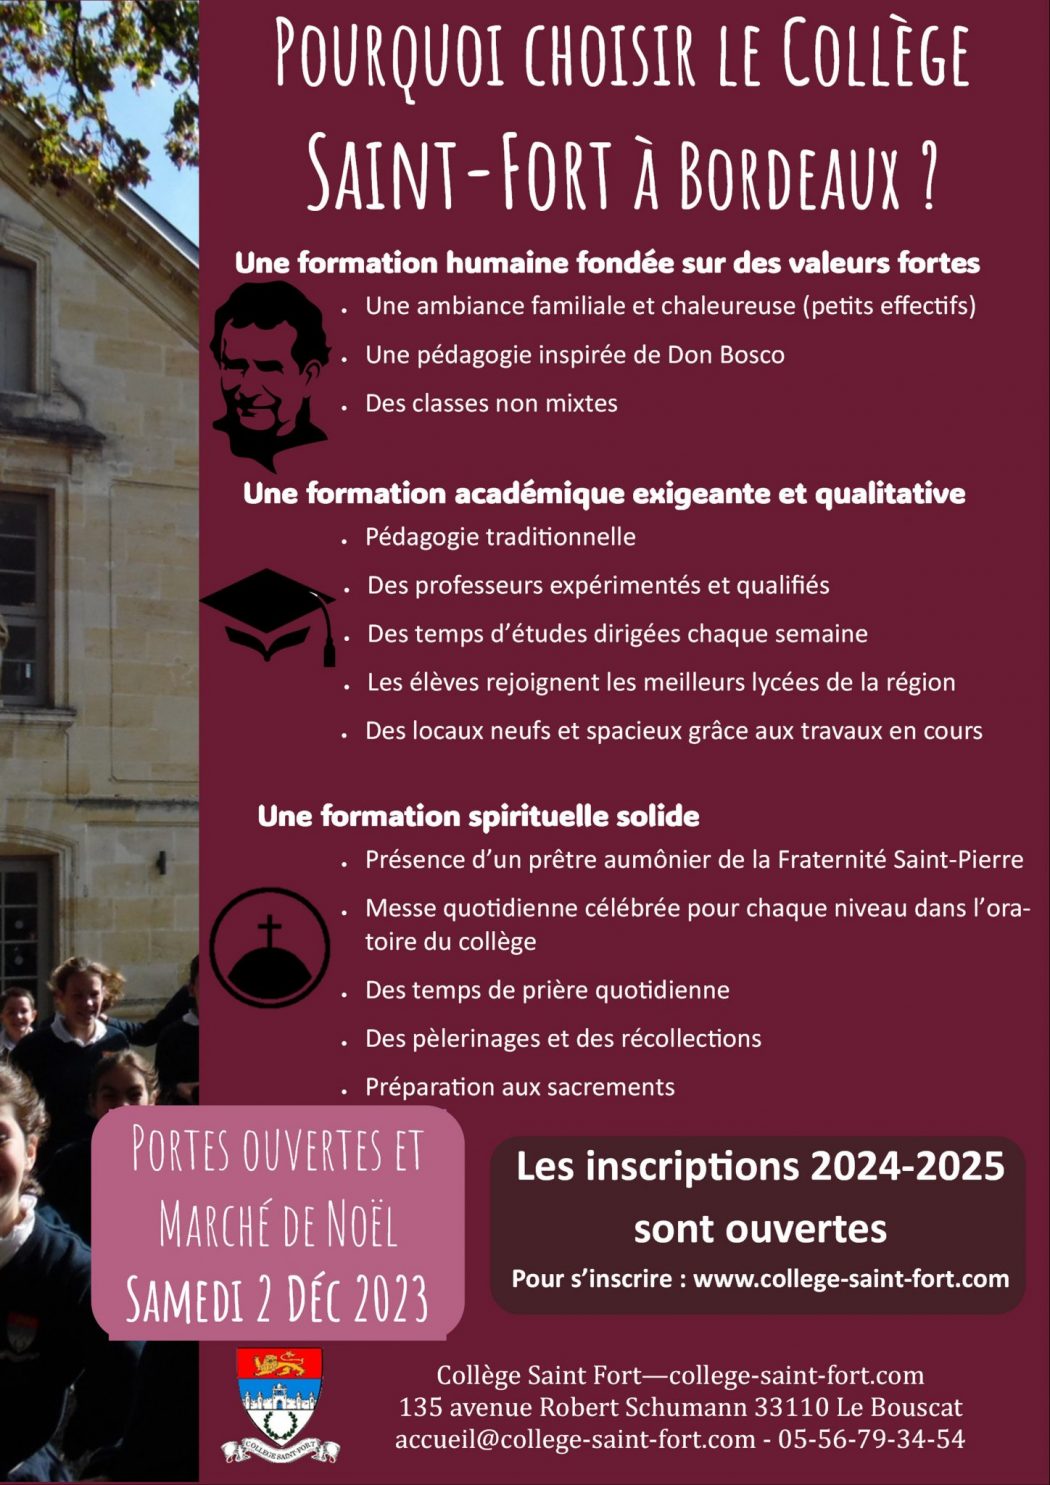 Connaissez-vous le collège Saint-Fort de Bordeaux ?